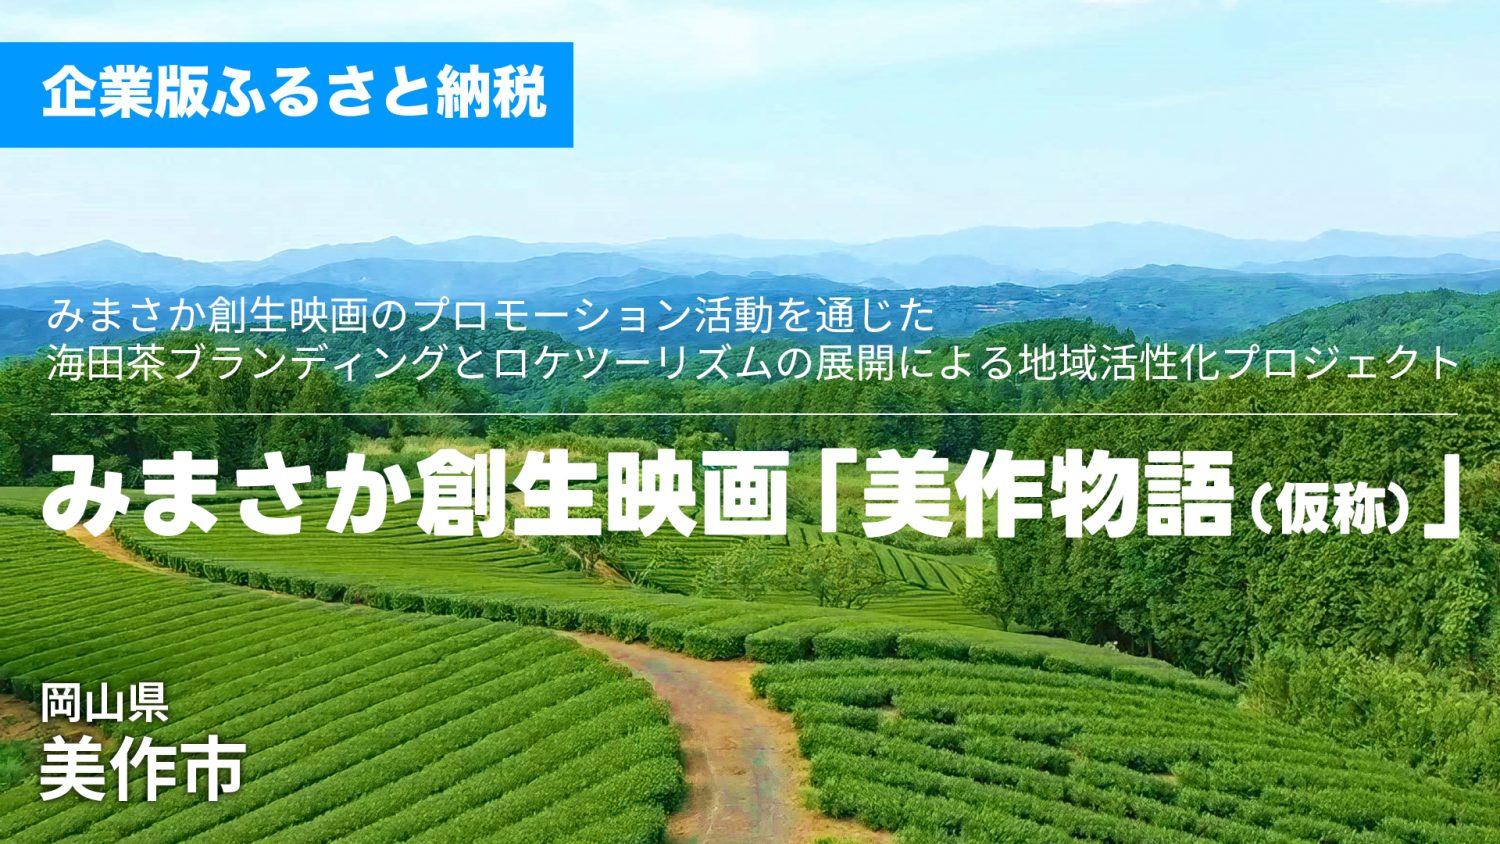 【岡山県美作市】みまさか創生映画のプロモーション活動を通じた海田茶のブランディングとロケツーリズムの展開による地域活性化事業